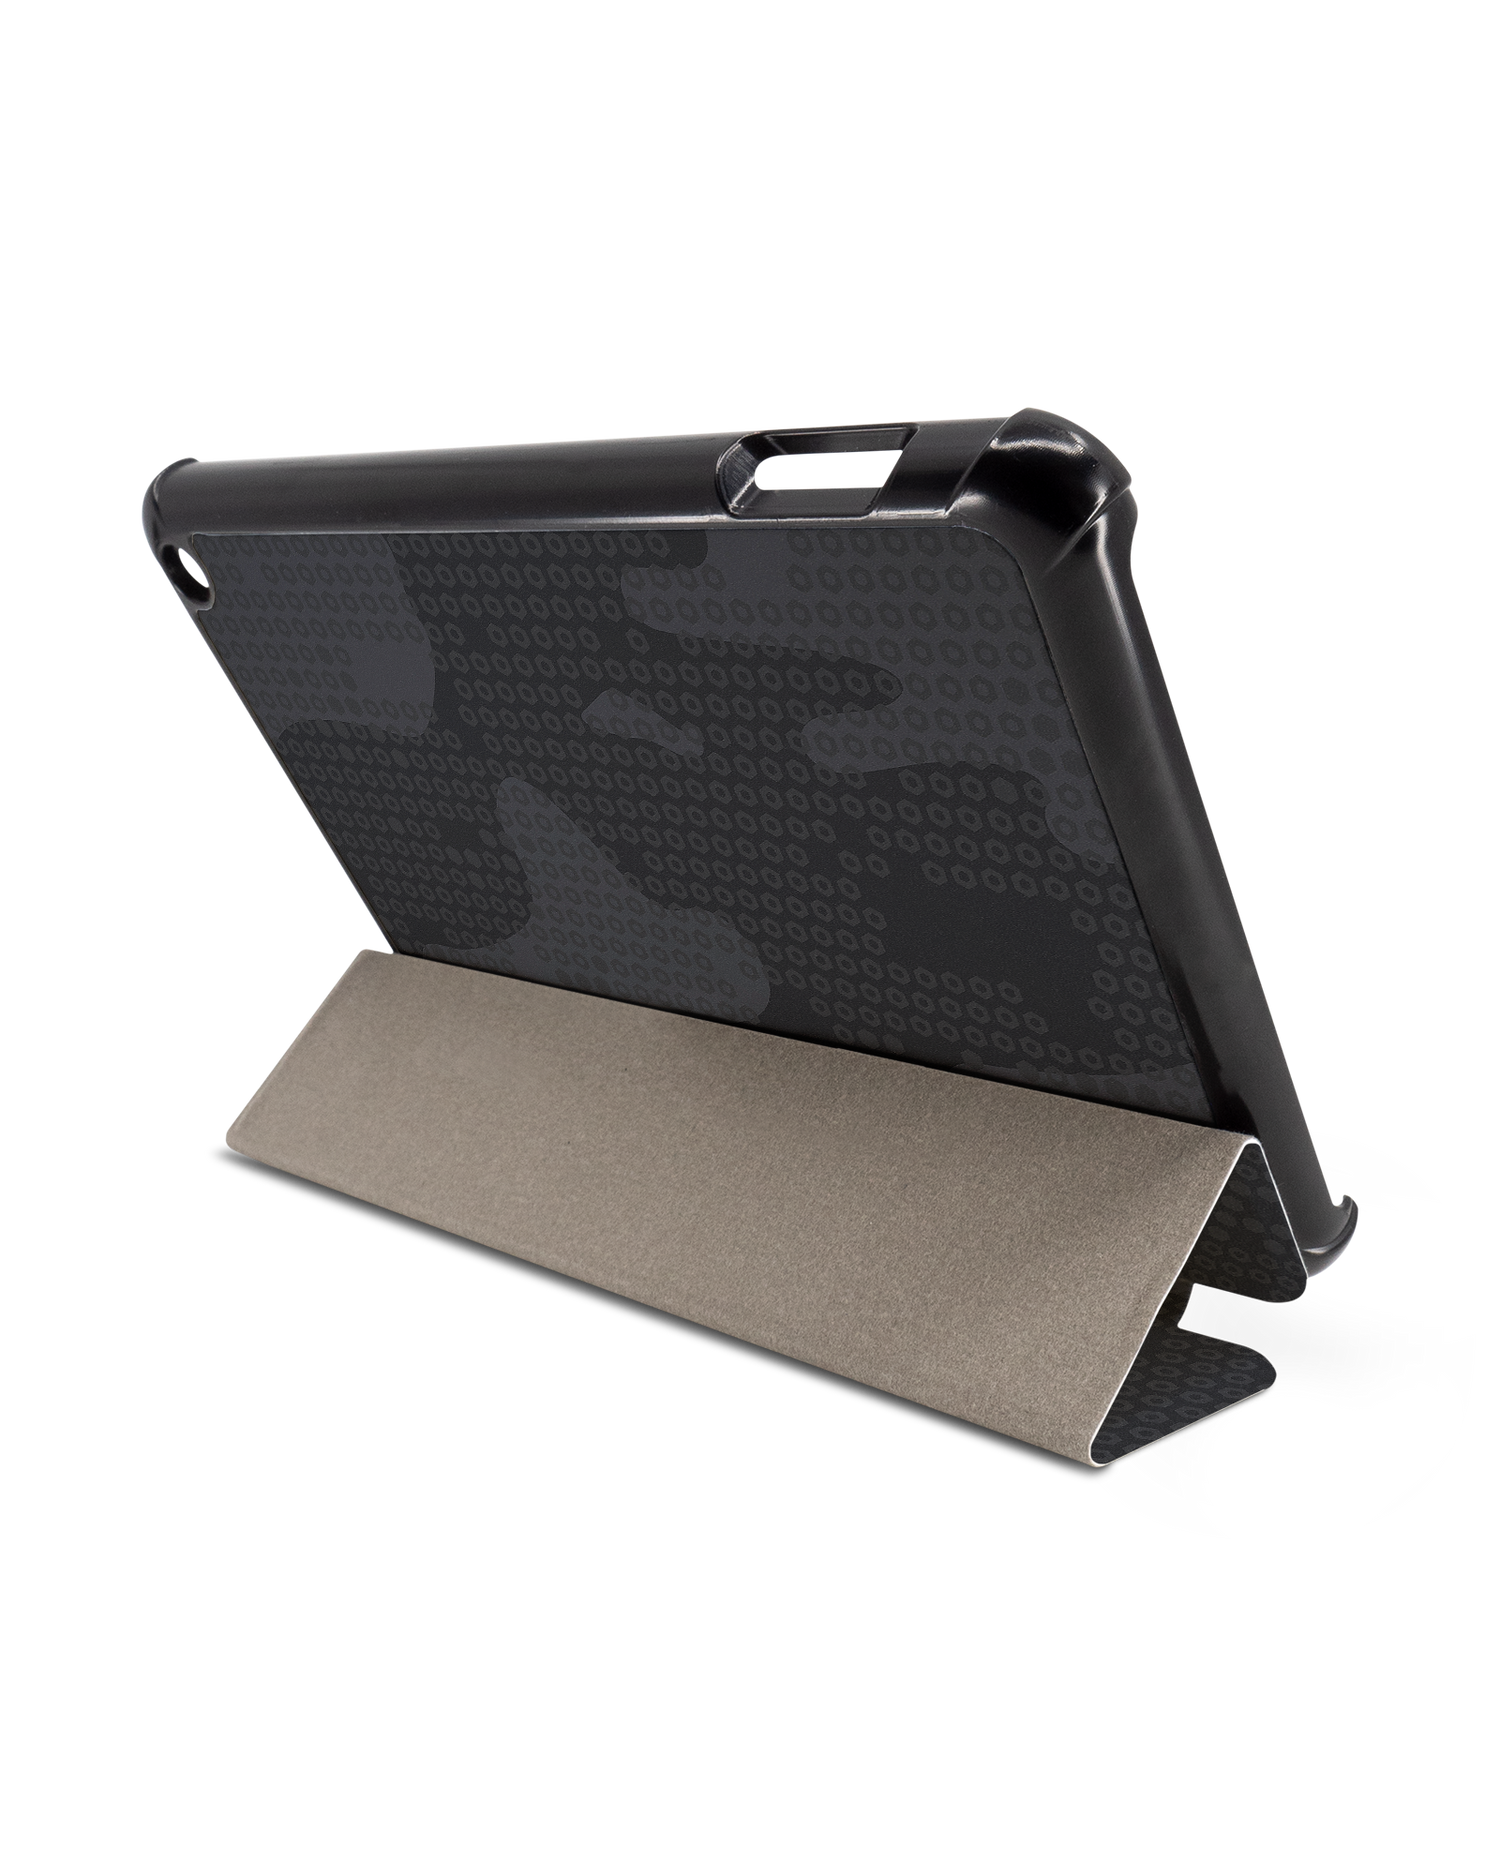 Spec Ops Dark Tablet Smart Case für Amazon Fire 7 (2022): Aufgestellt im Querformat